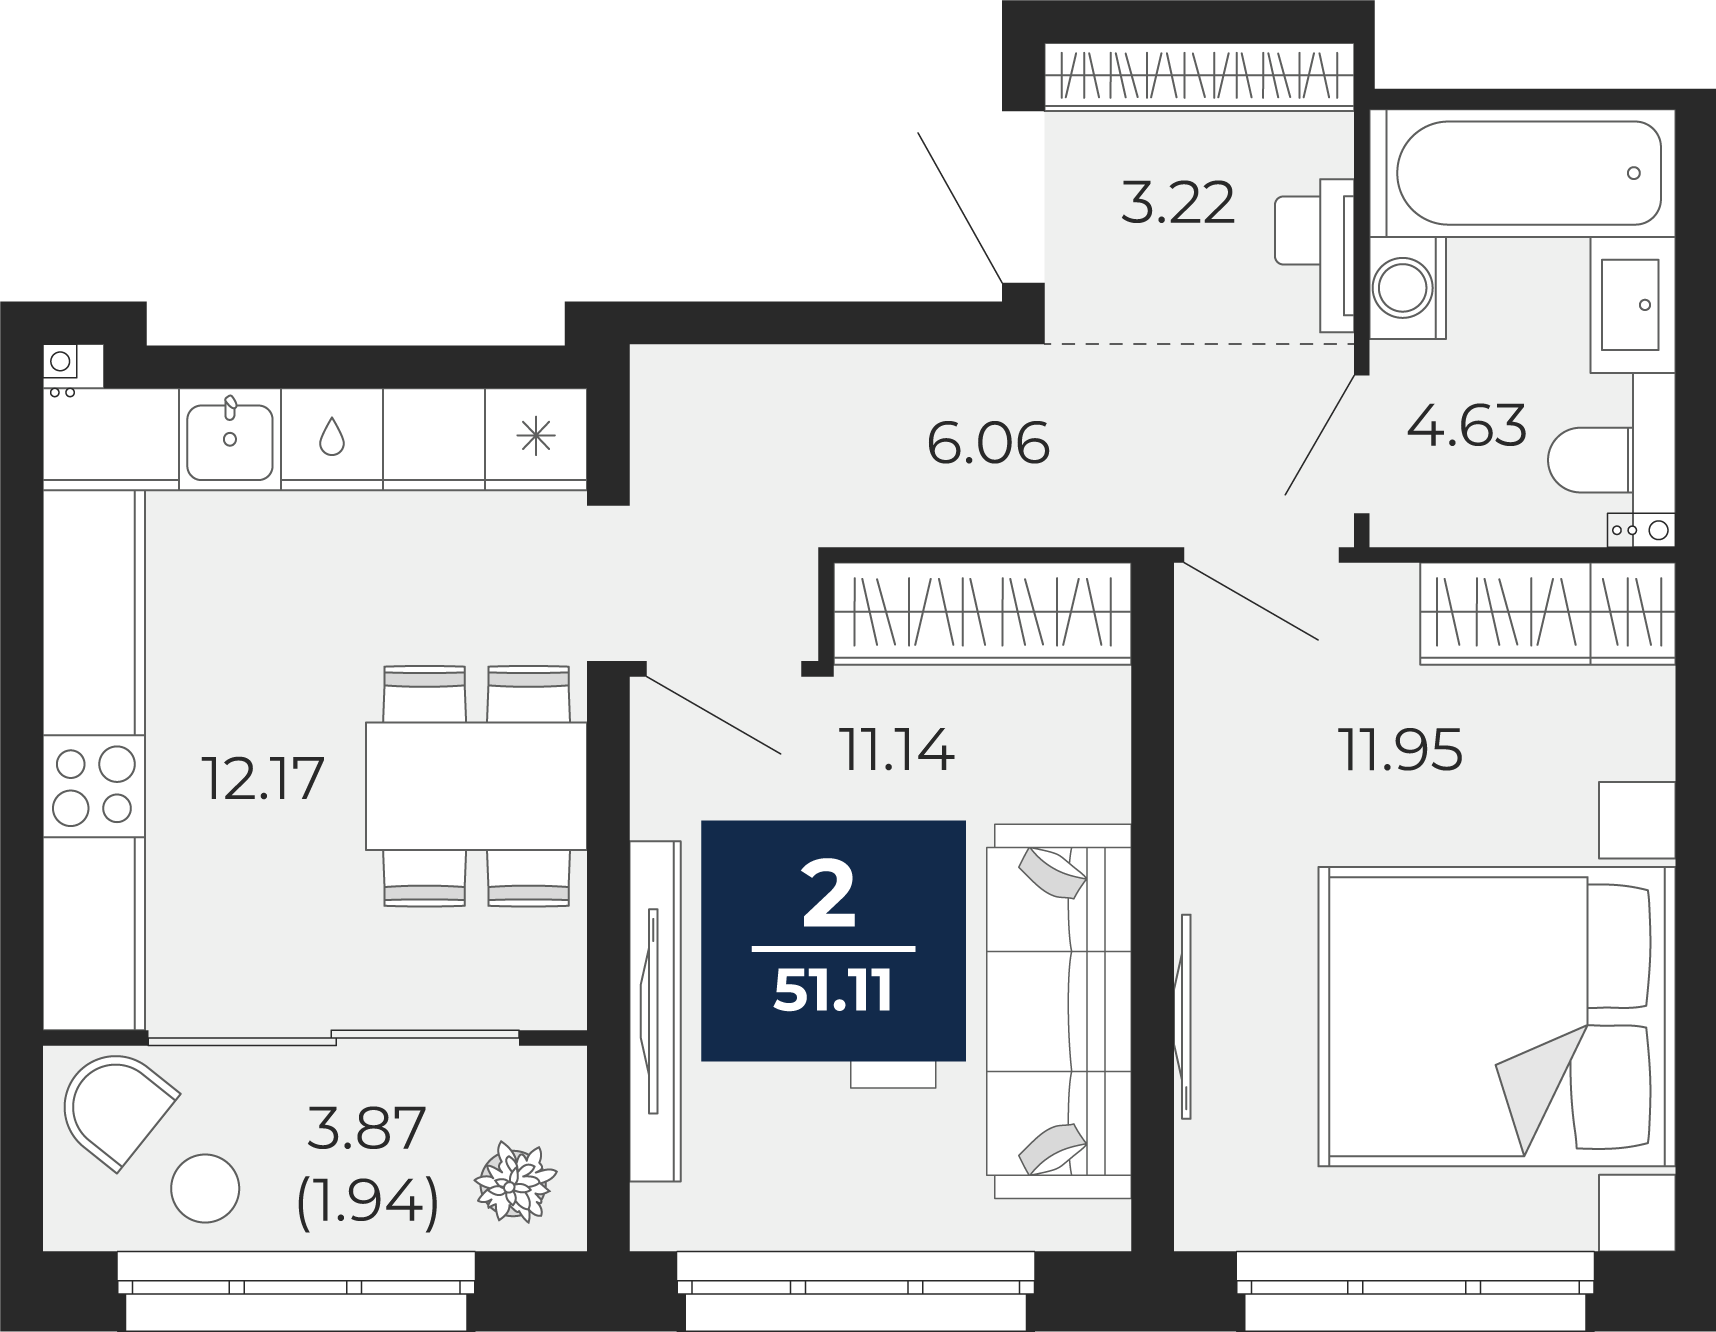 Квартира № 59, 2-комнатная, 51.11 кв. м, 13 этаж